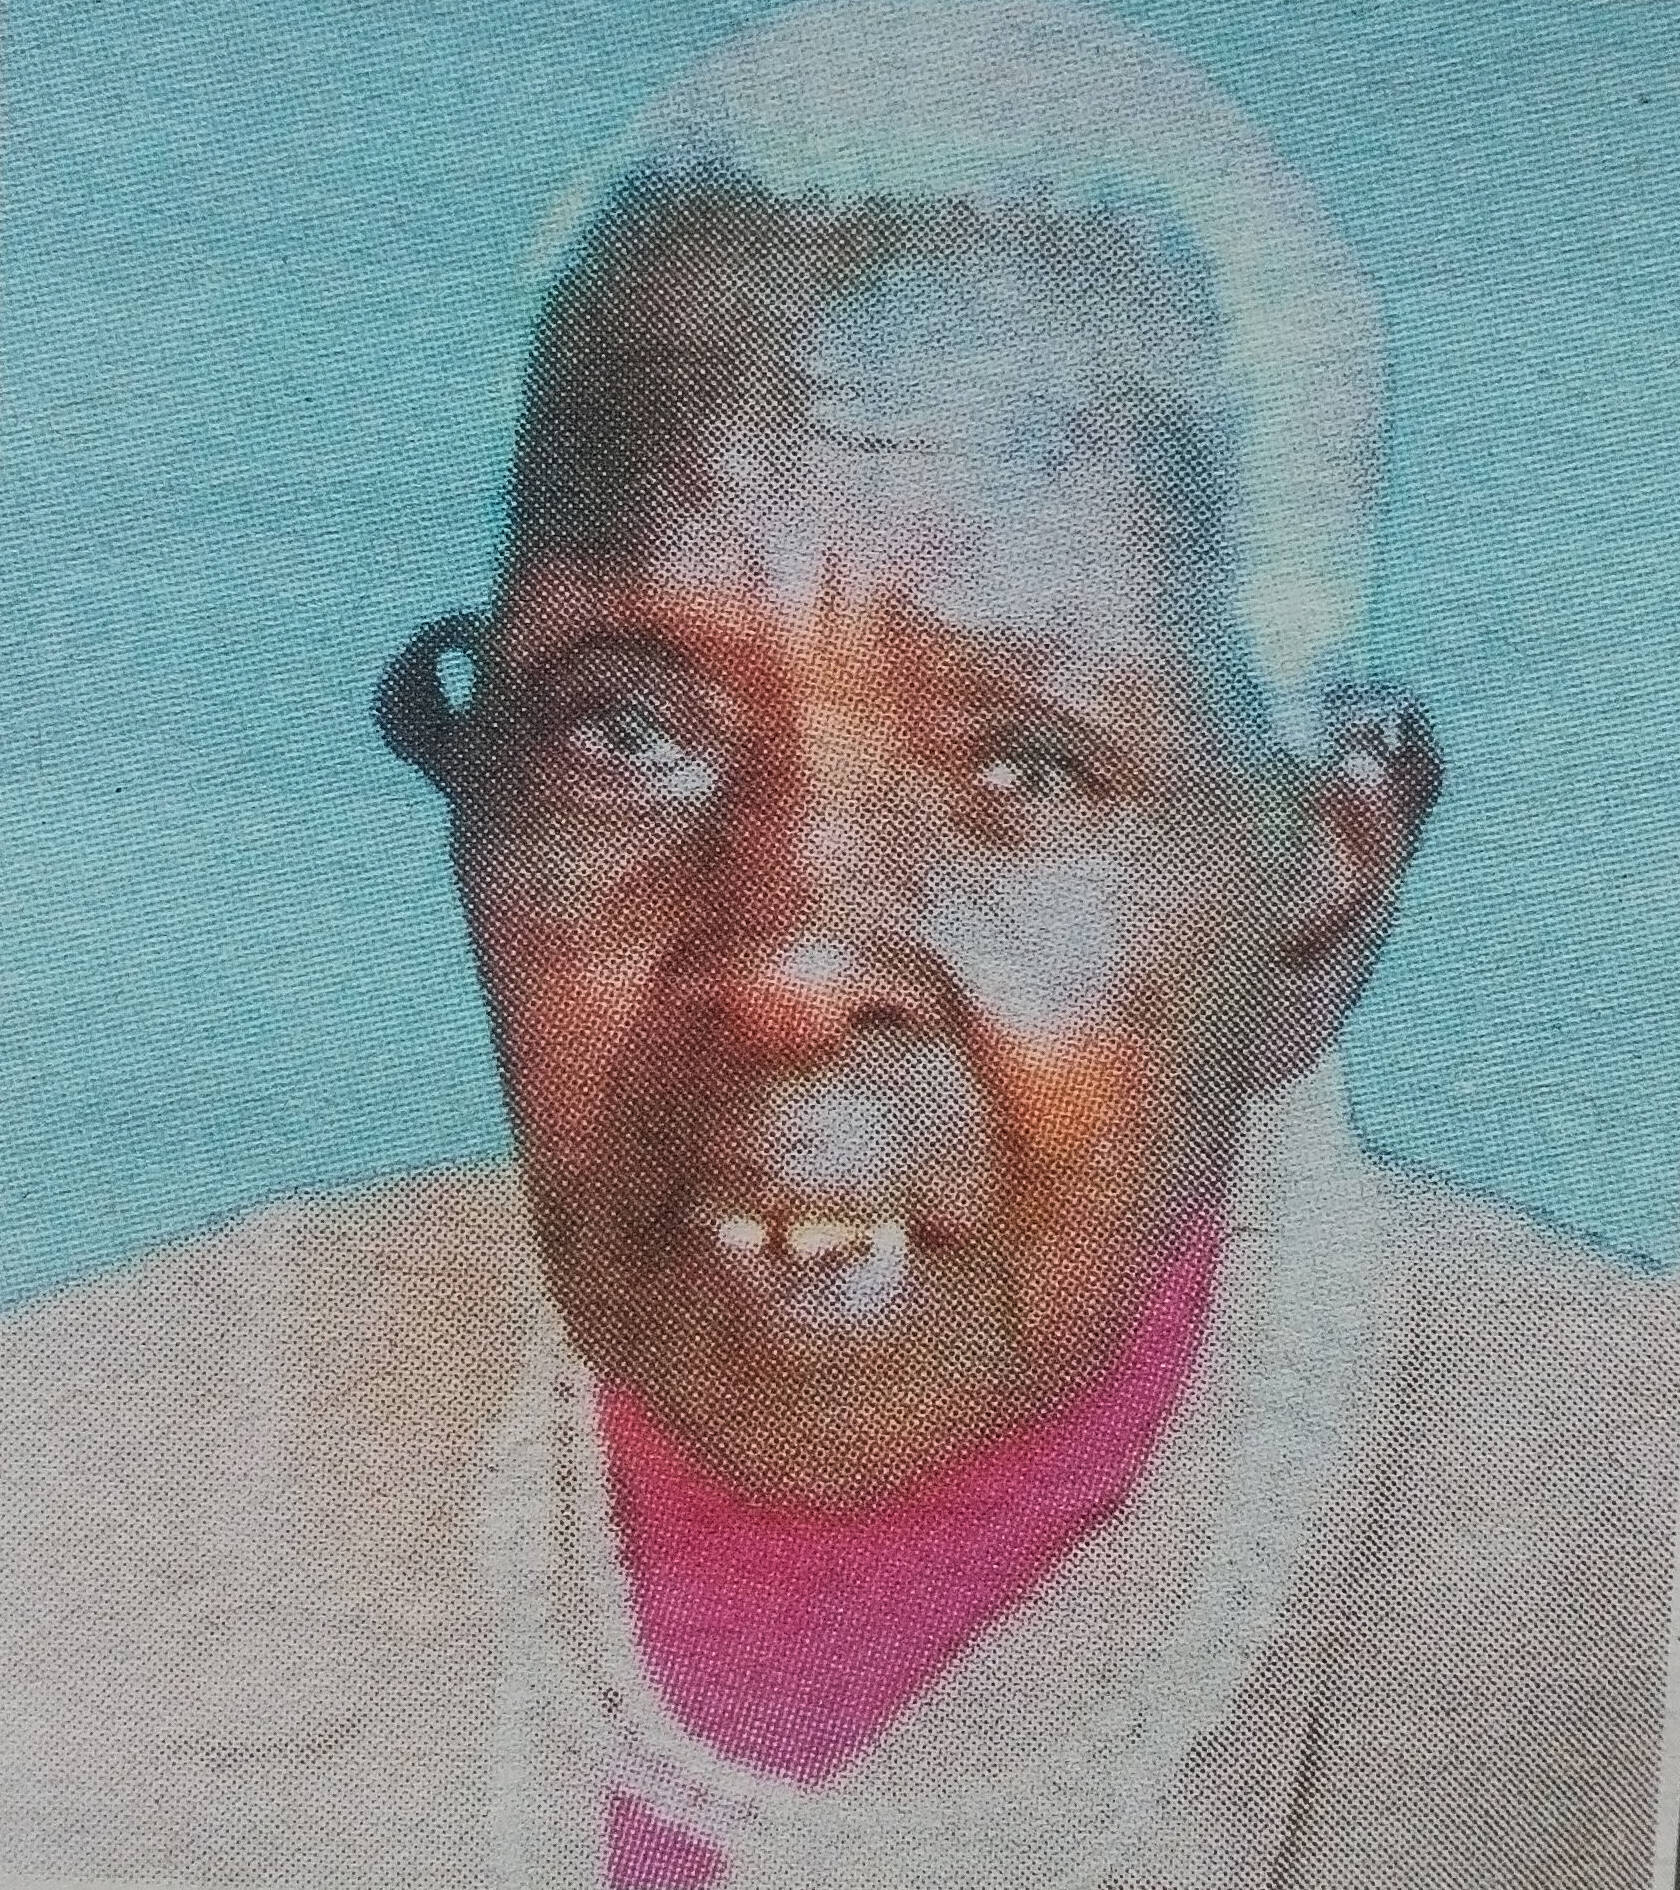 Obituary Image of Gladys Watiri Munyaka 1925 - 25/3/2017